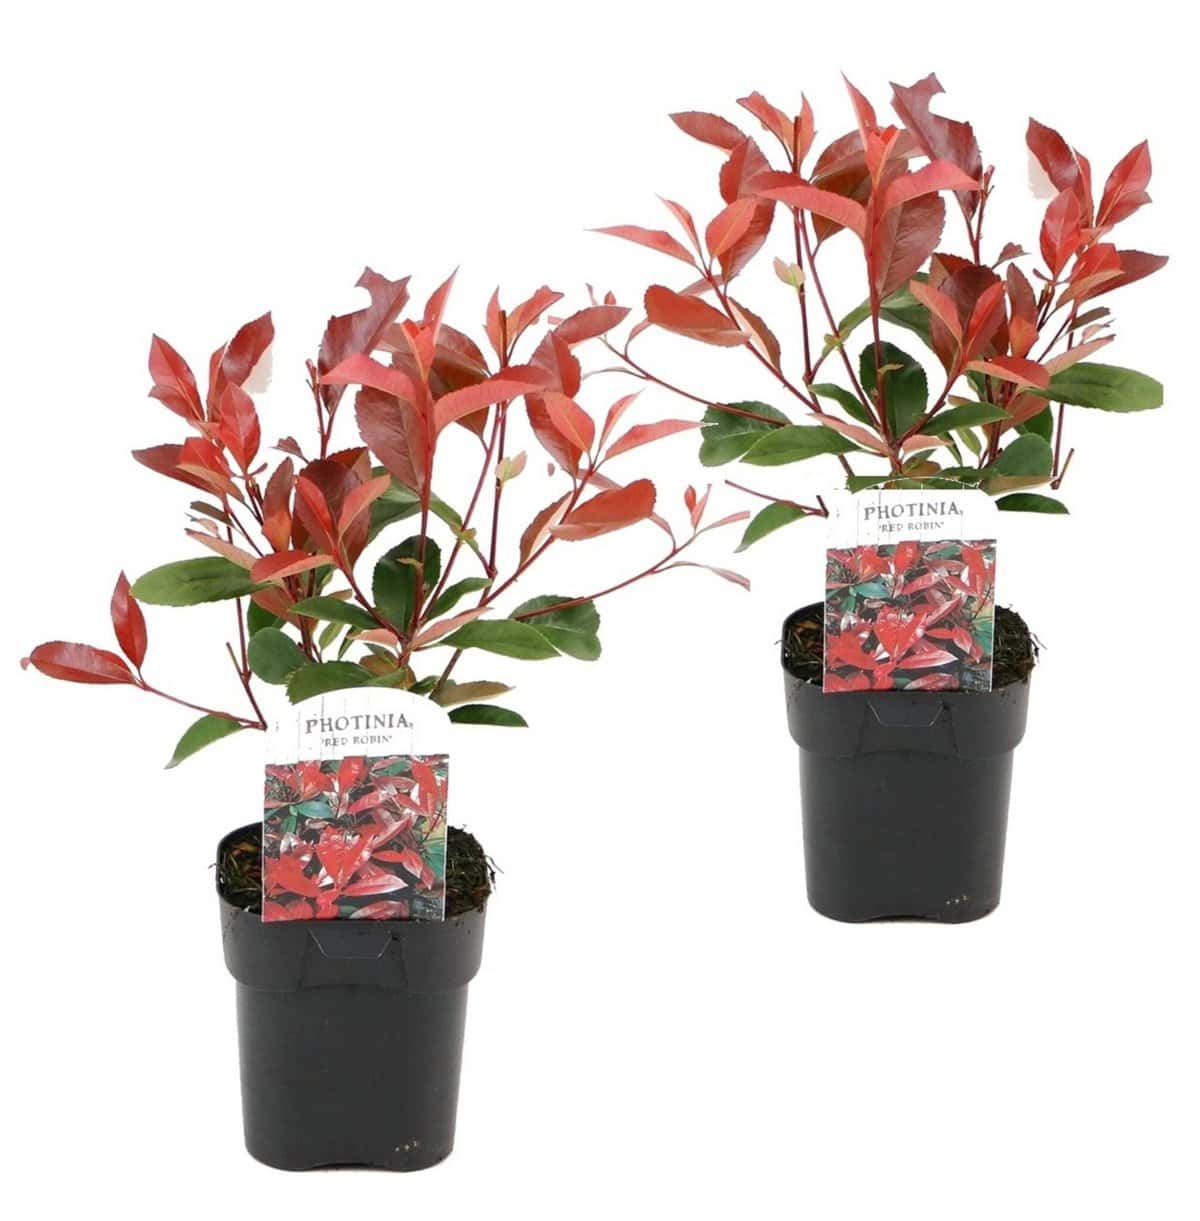 Photinia fraseri Red Robin - Set van 2 - Wintergroen - Pot 17cm - Hoogte 30-40cm bezorgen via Florastore